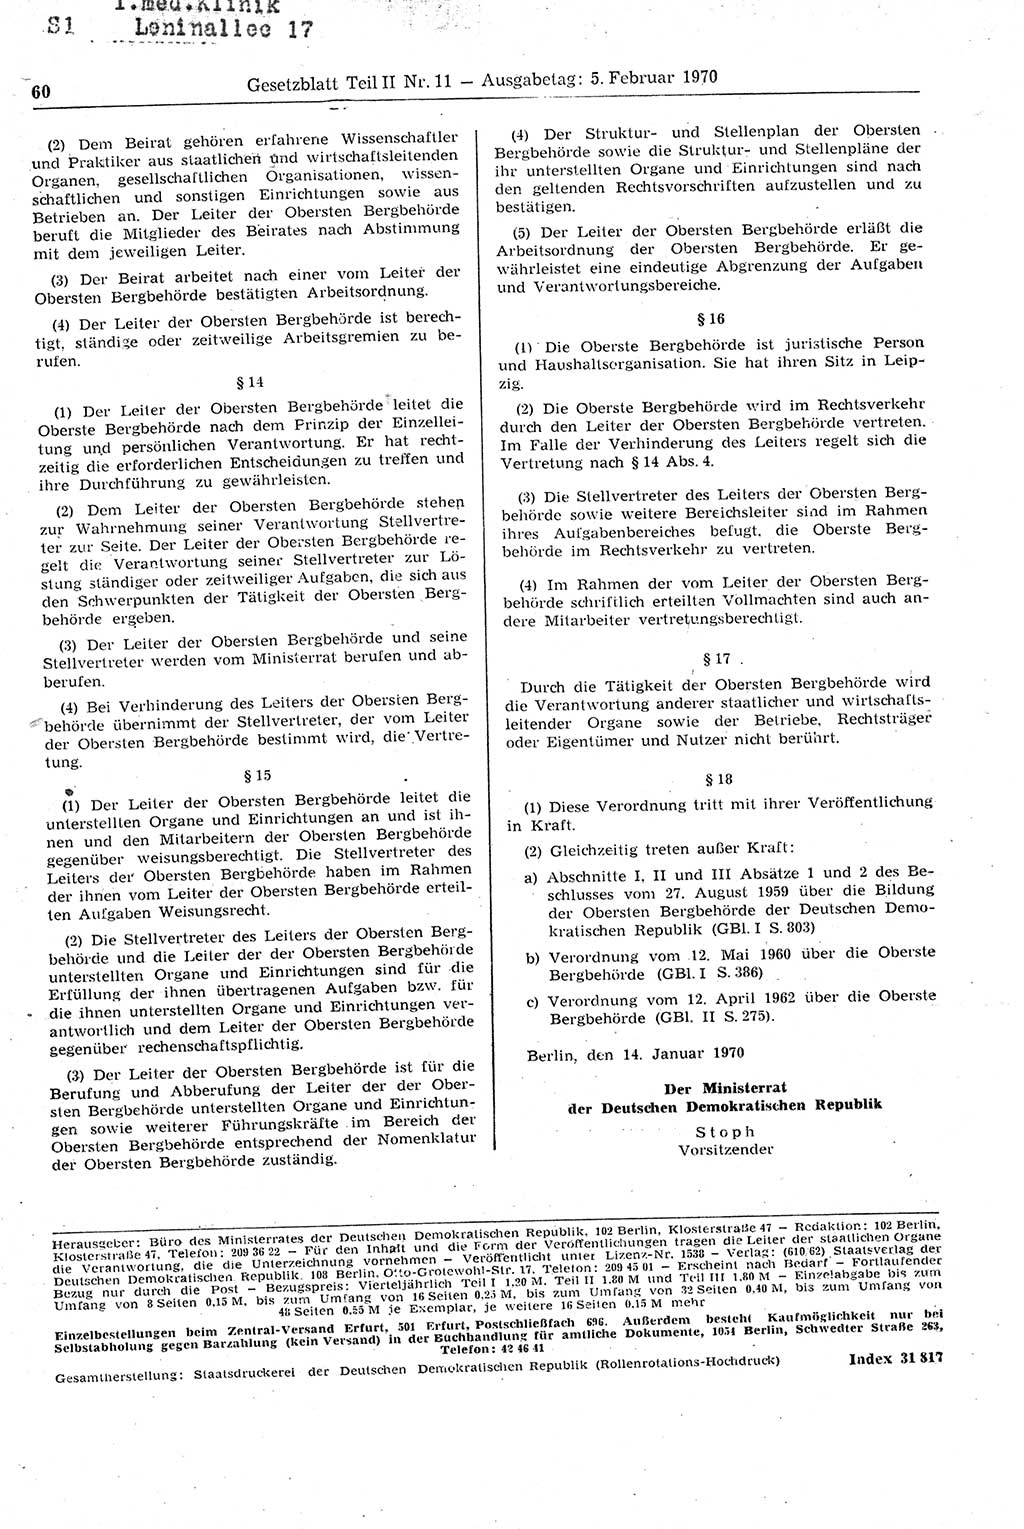 Gesetzblatt (GBl.) der Deutschen Demokratischen Republik (DDR) Teil ⅠⅠ 1970, Seite 60 (GBl. DDR ⅠⅠ 1970, S. 60)